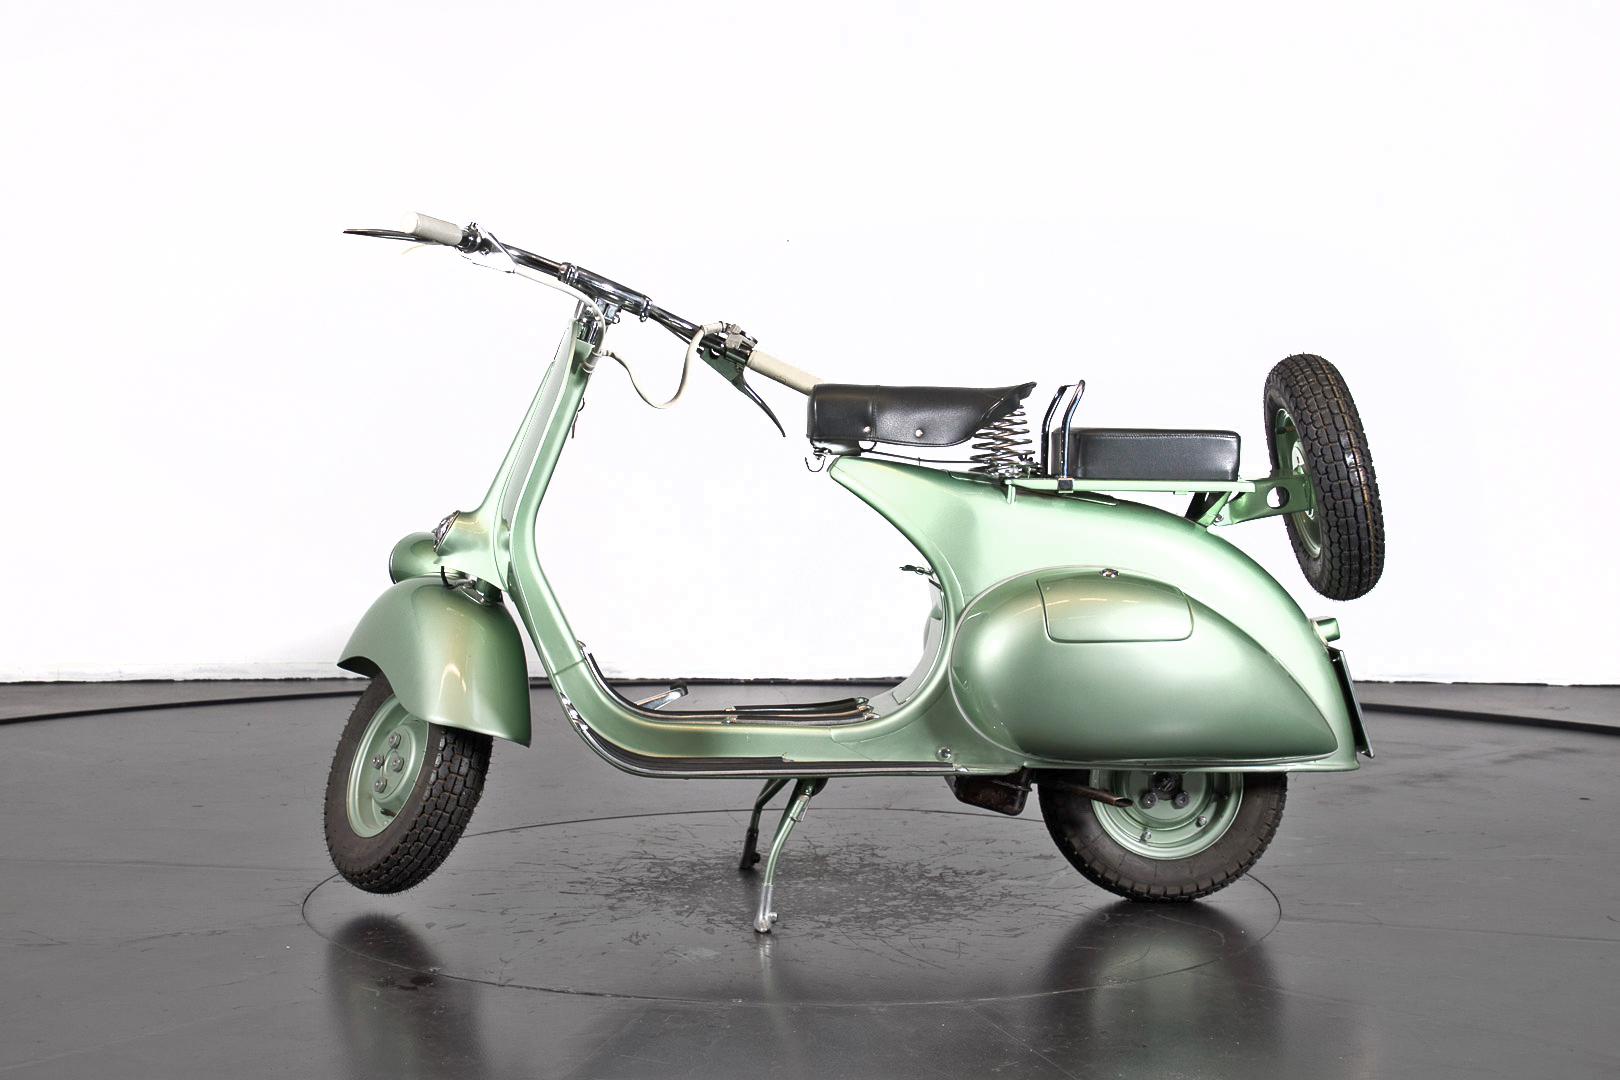 1952 Piaggio Vespa 125 - Piaggio - Moto d'epoca - Ruote da Sogno